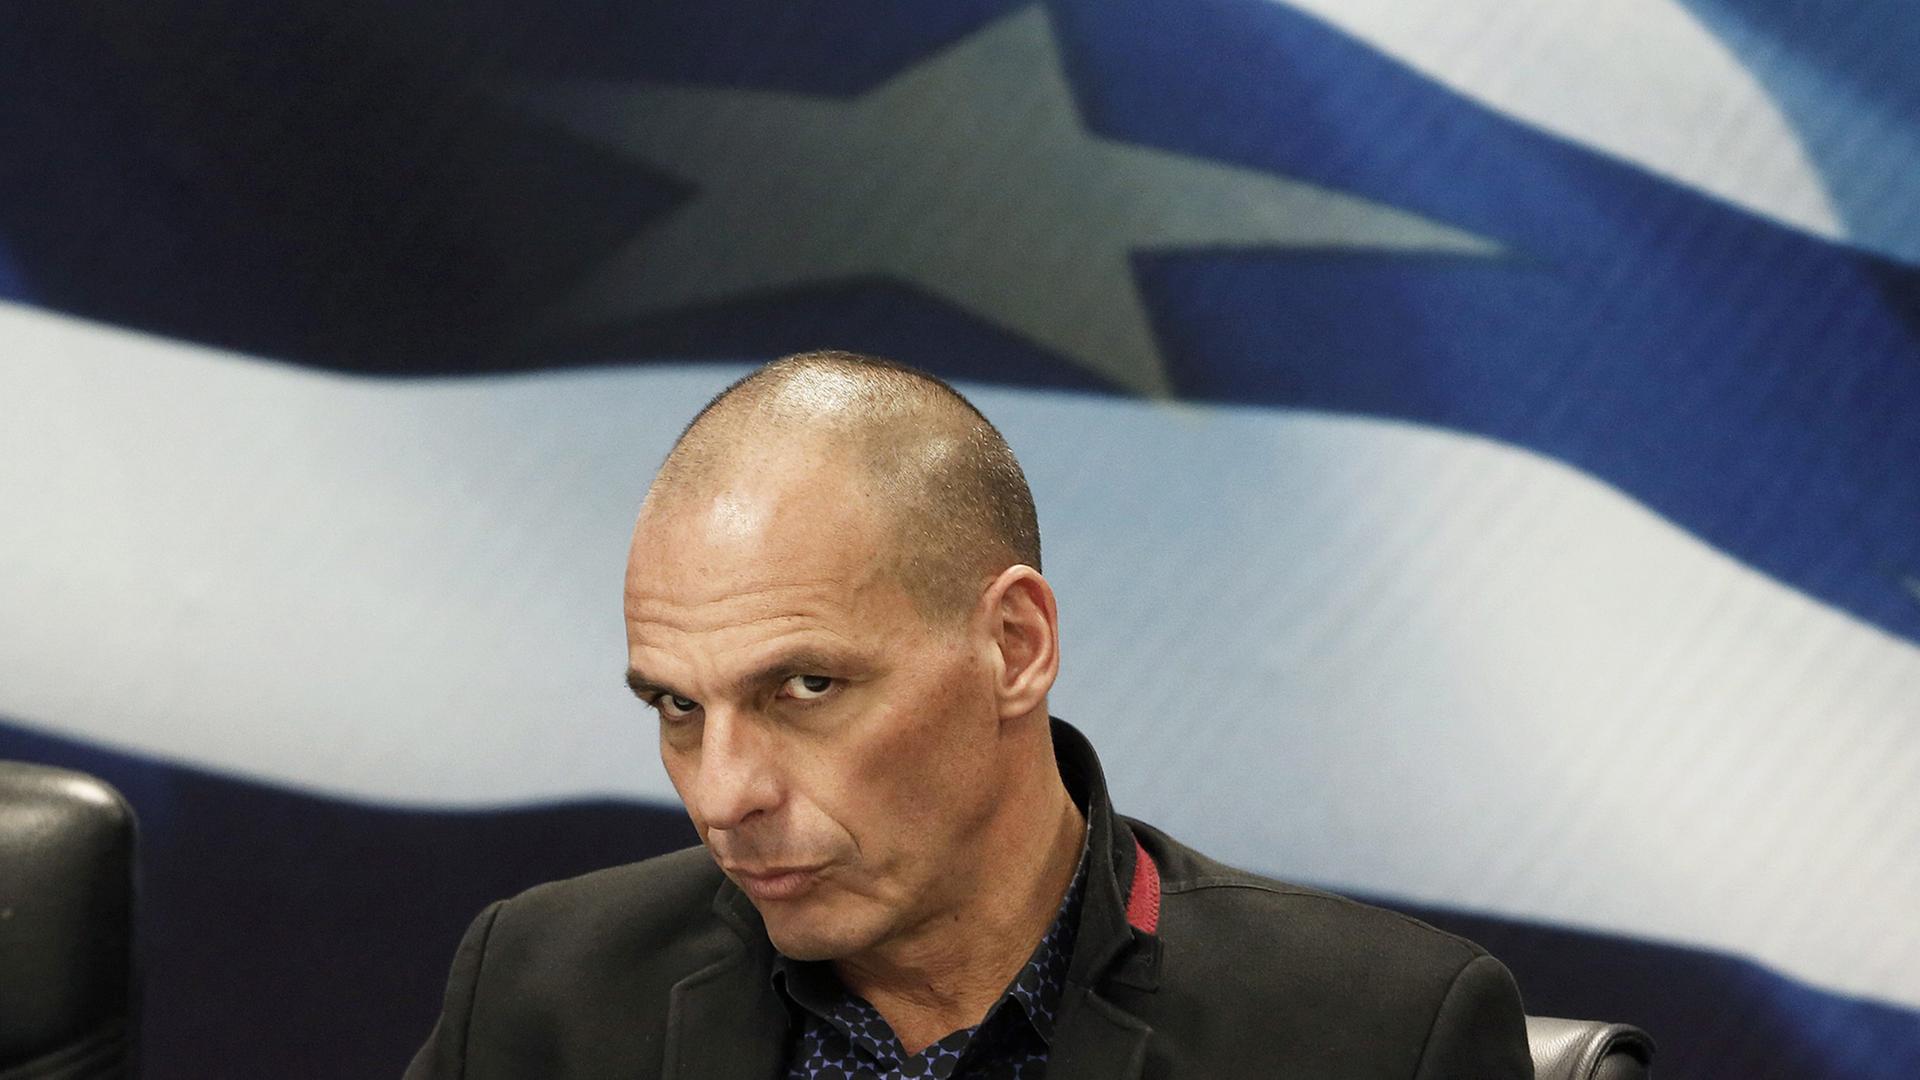 Der griechische Finanzminister Yanis Varoufakis, aufgenommen in Athen.